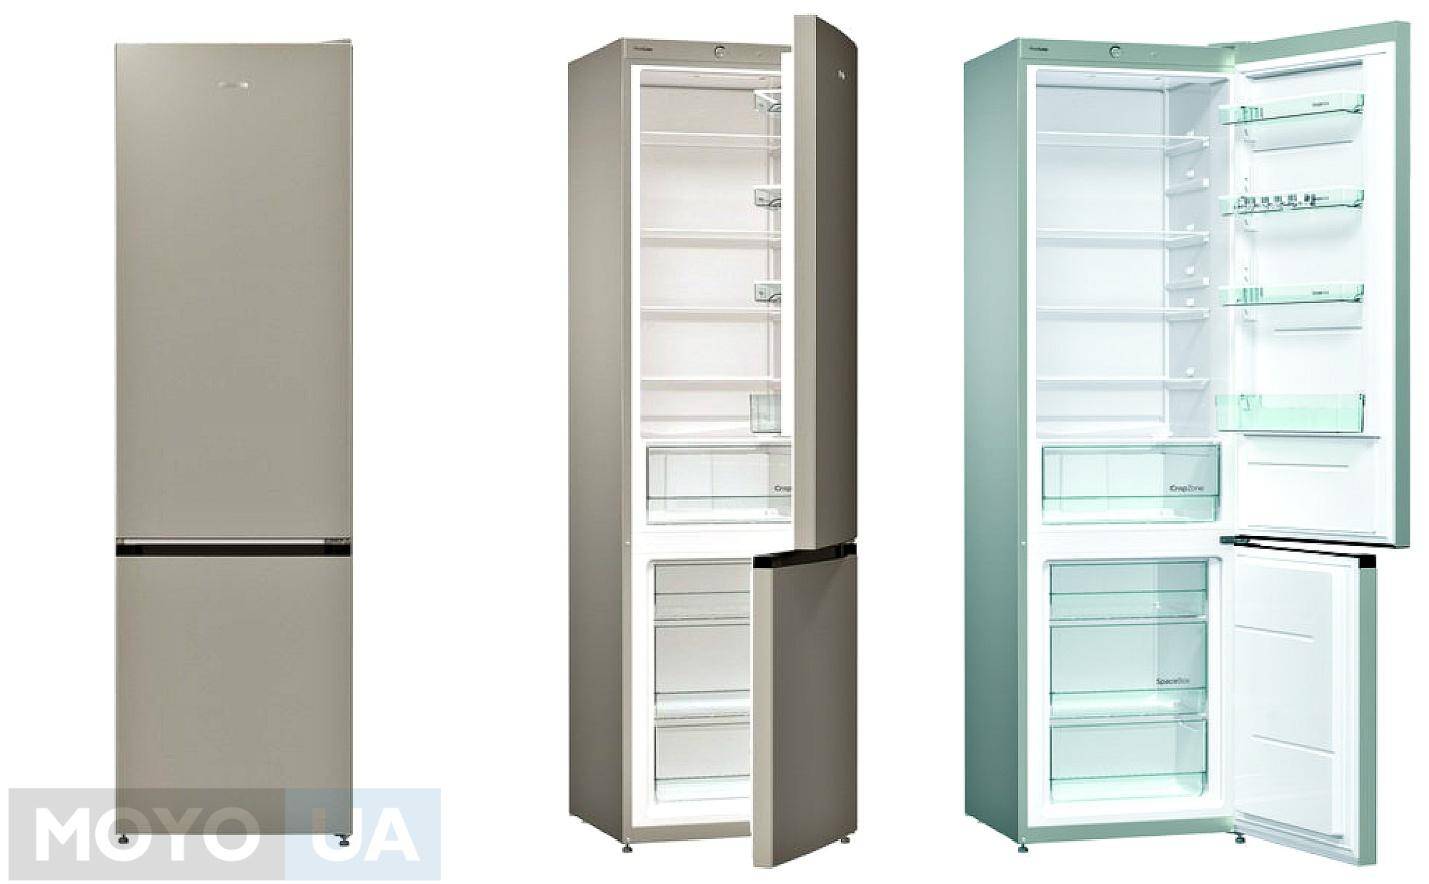 Какой фирмы холодильник лучше – рейтинг производителей 2021 года (топ 8)